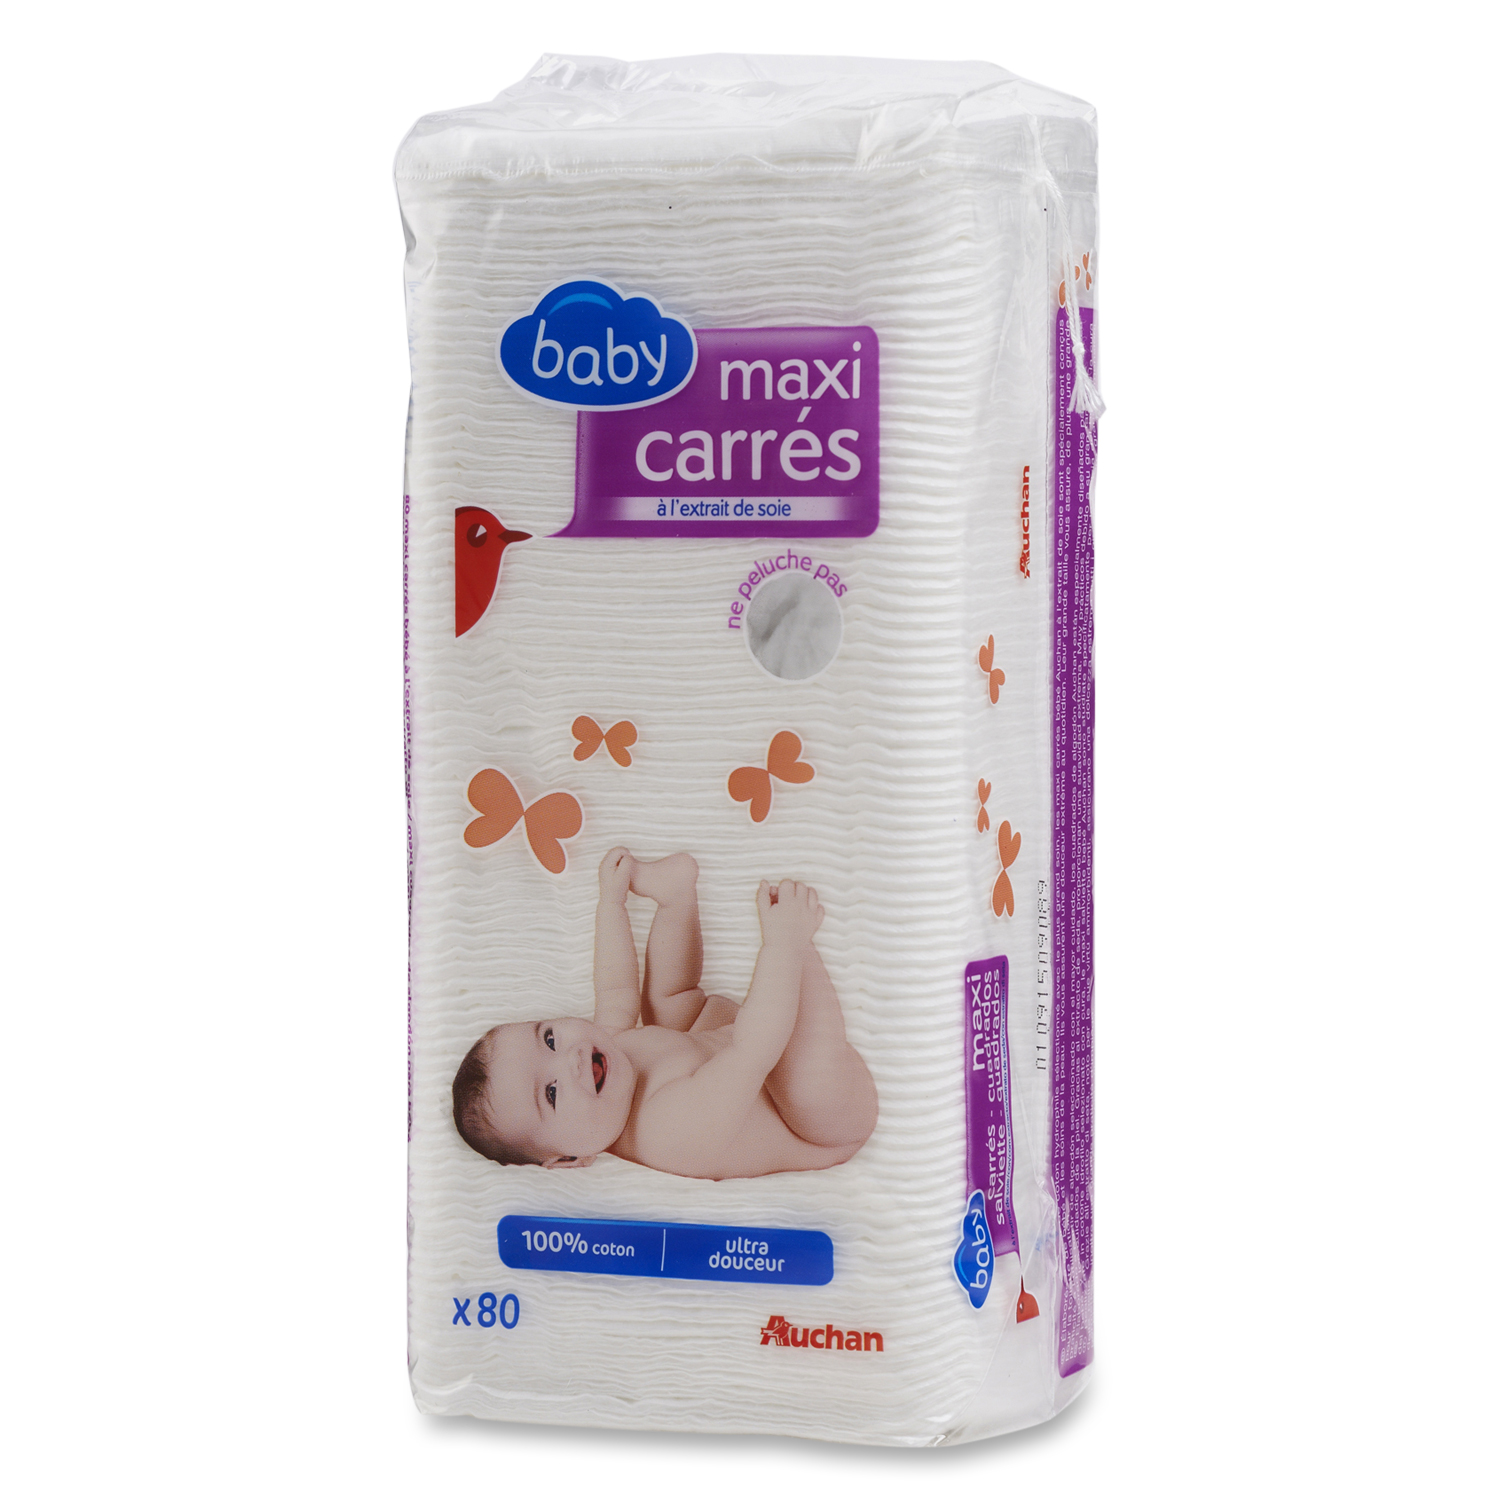 AUCHAN Auchan baby maxi carrés à l'extrait de soie ulta douceur x80 pas  cher 